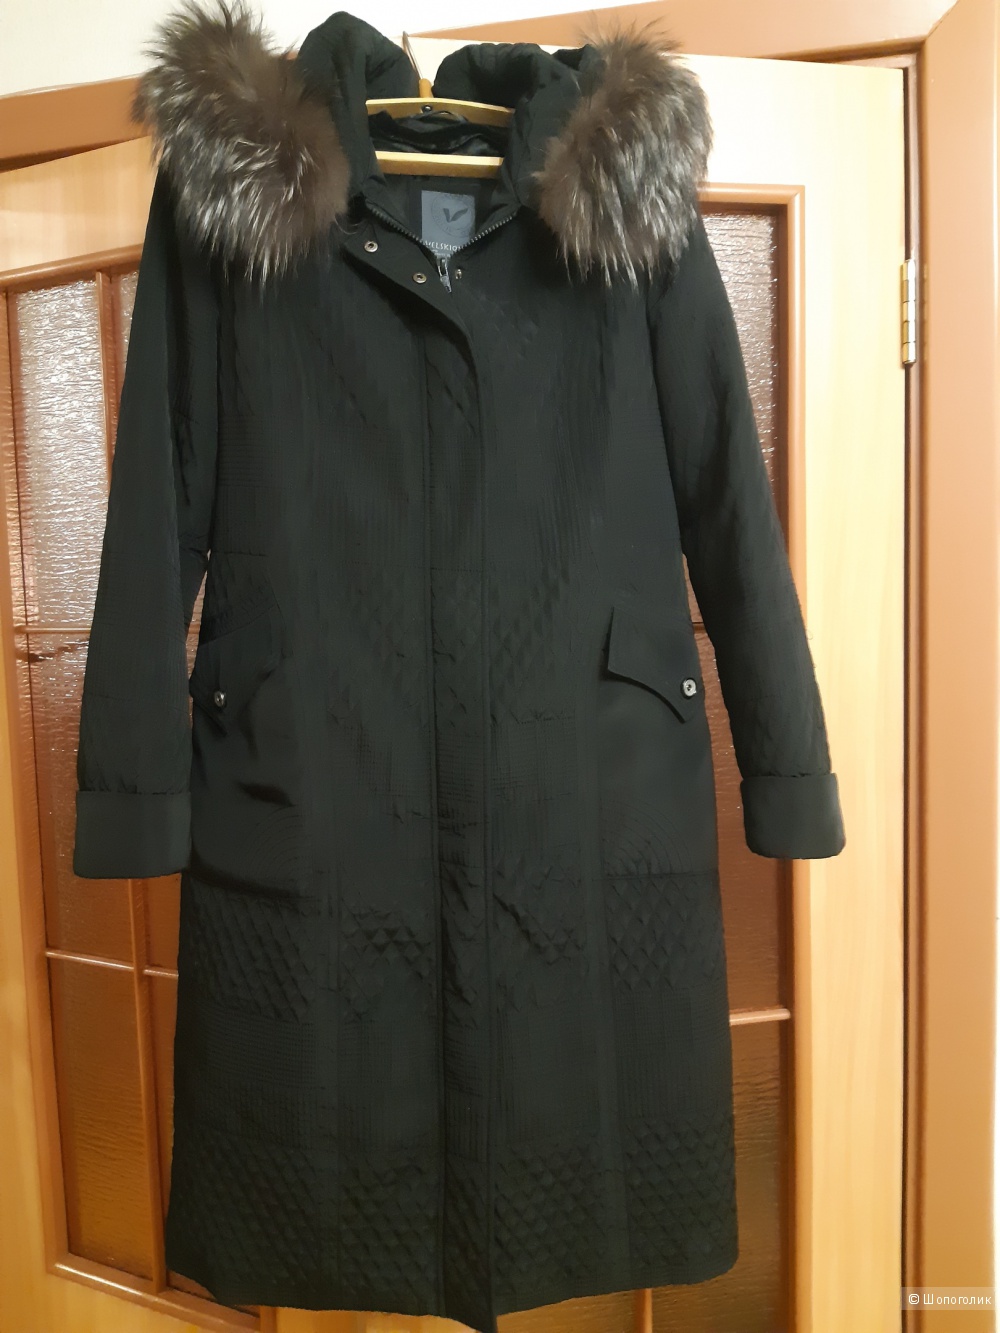 Пихора-пальто Velskiqa. 52 размер